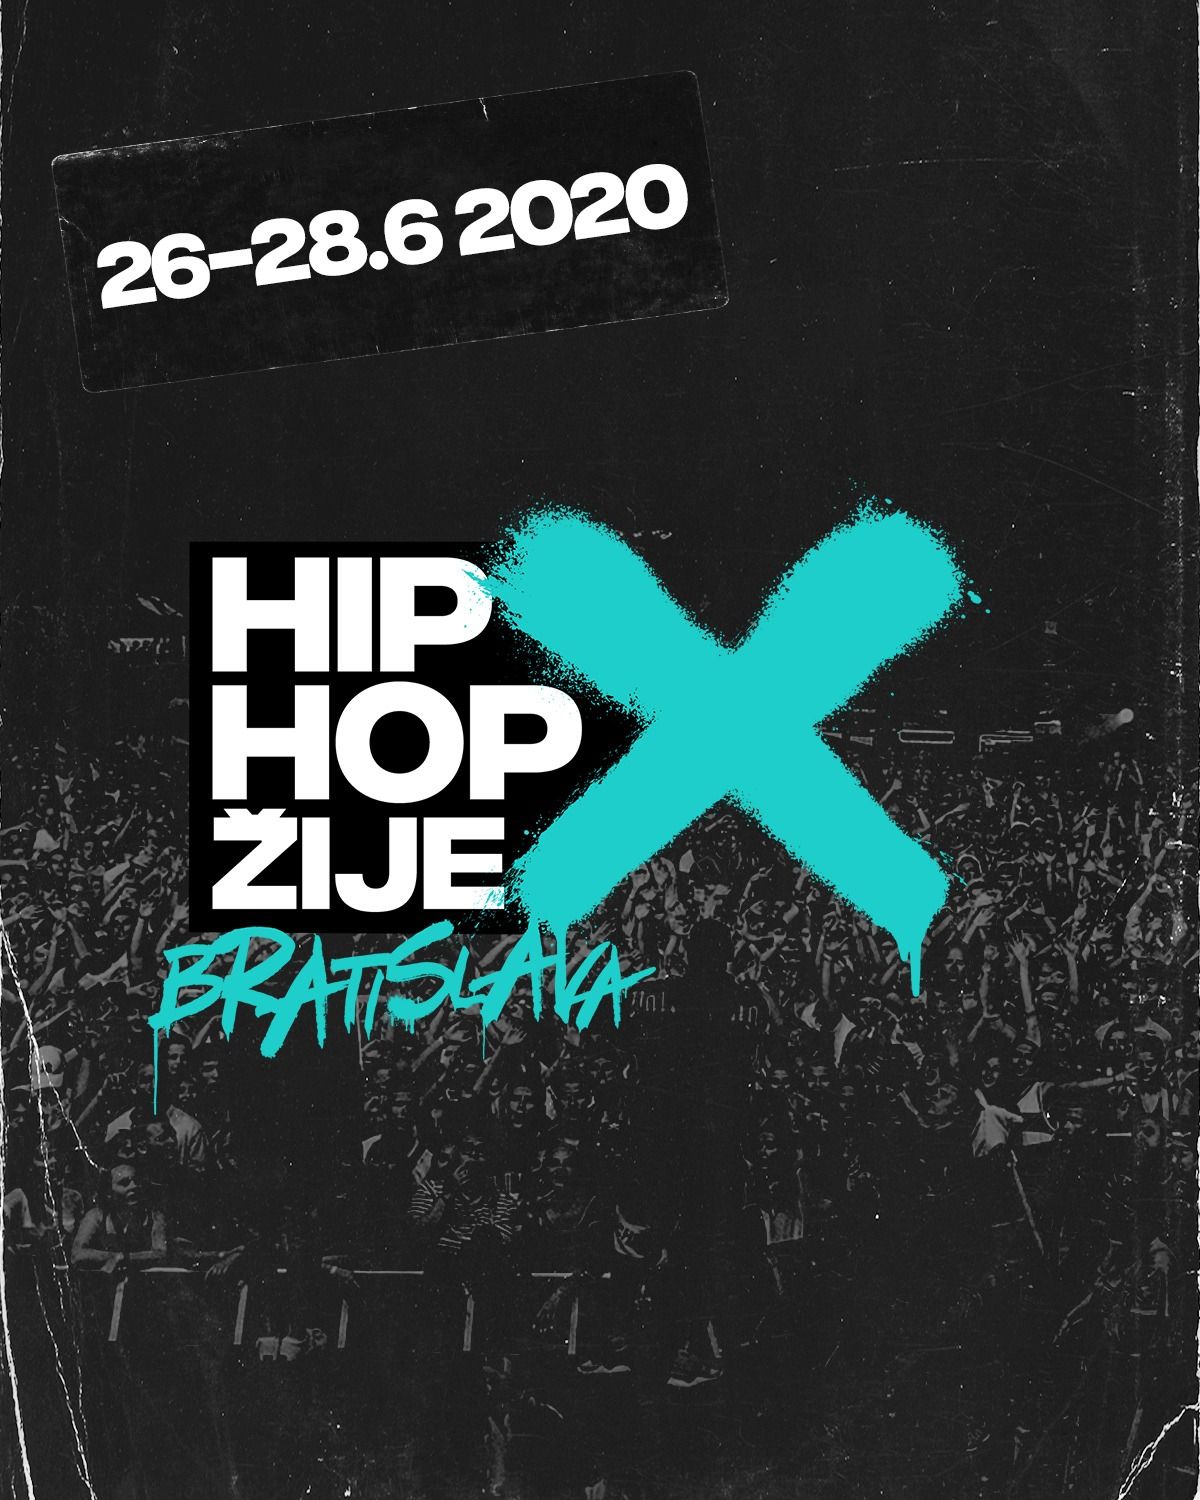 Hip Hop Žije mení logo aj koncept festivalu, nič už nebude ako pred tým. Čo znamená písmeno X v novej grafike?